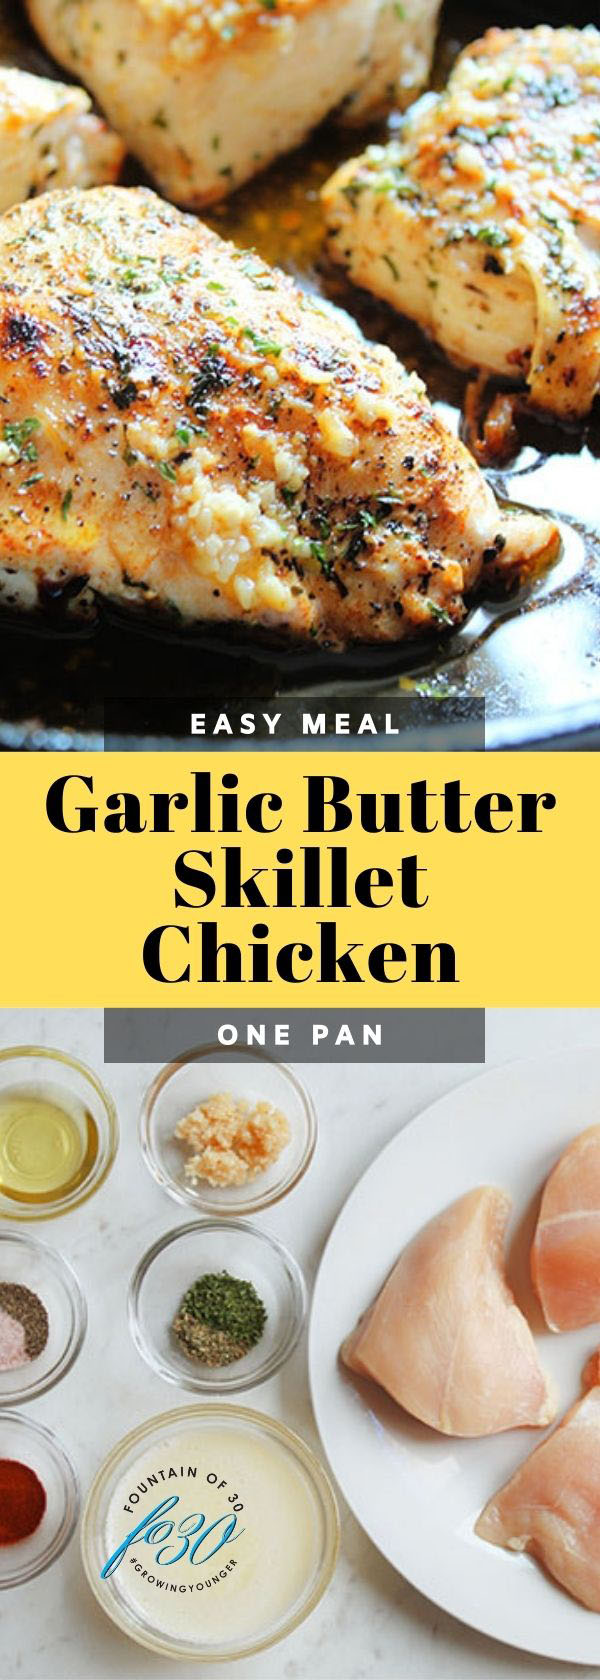 garlic butter chicken in a skillet fountainof30